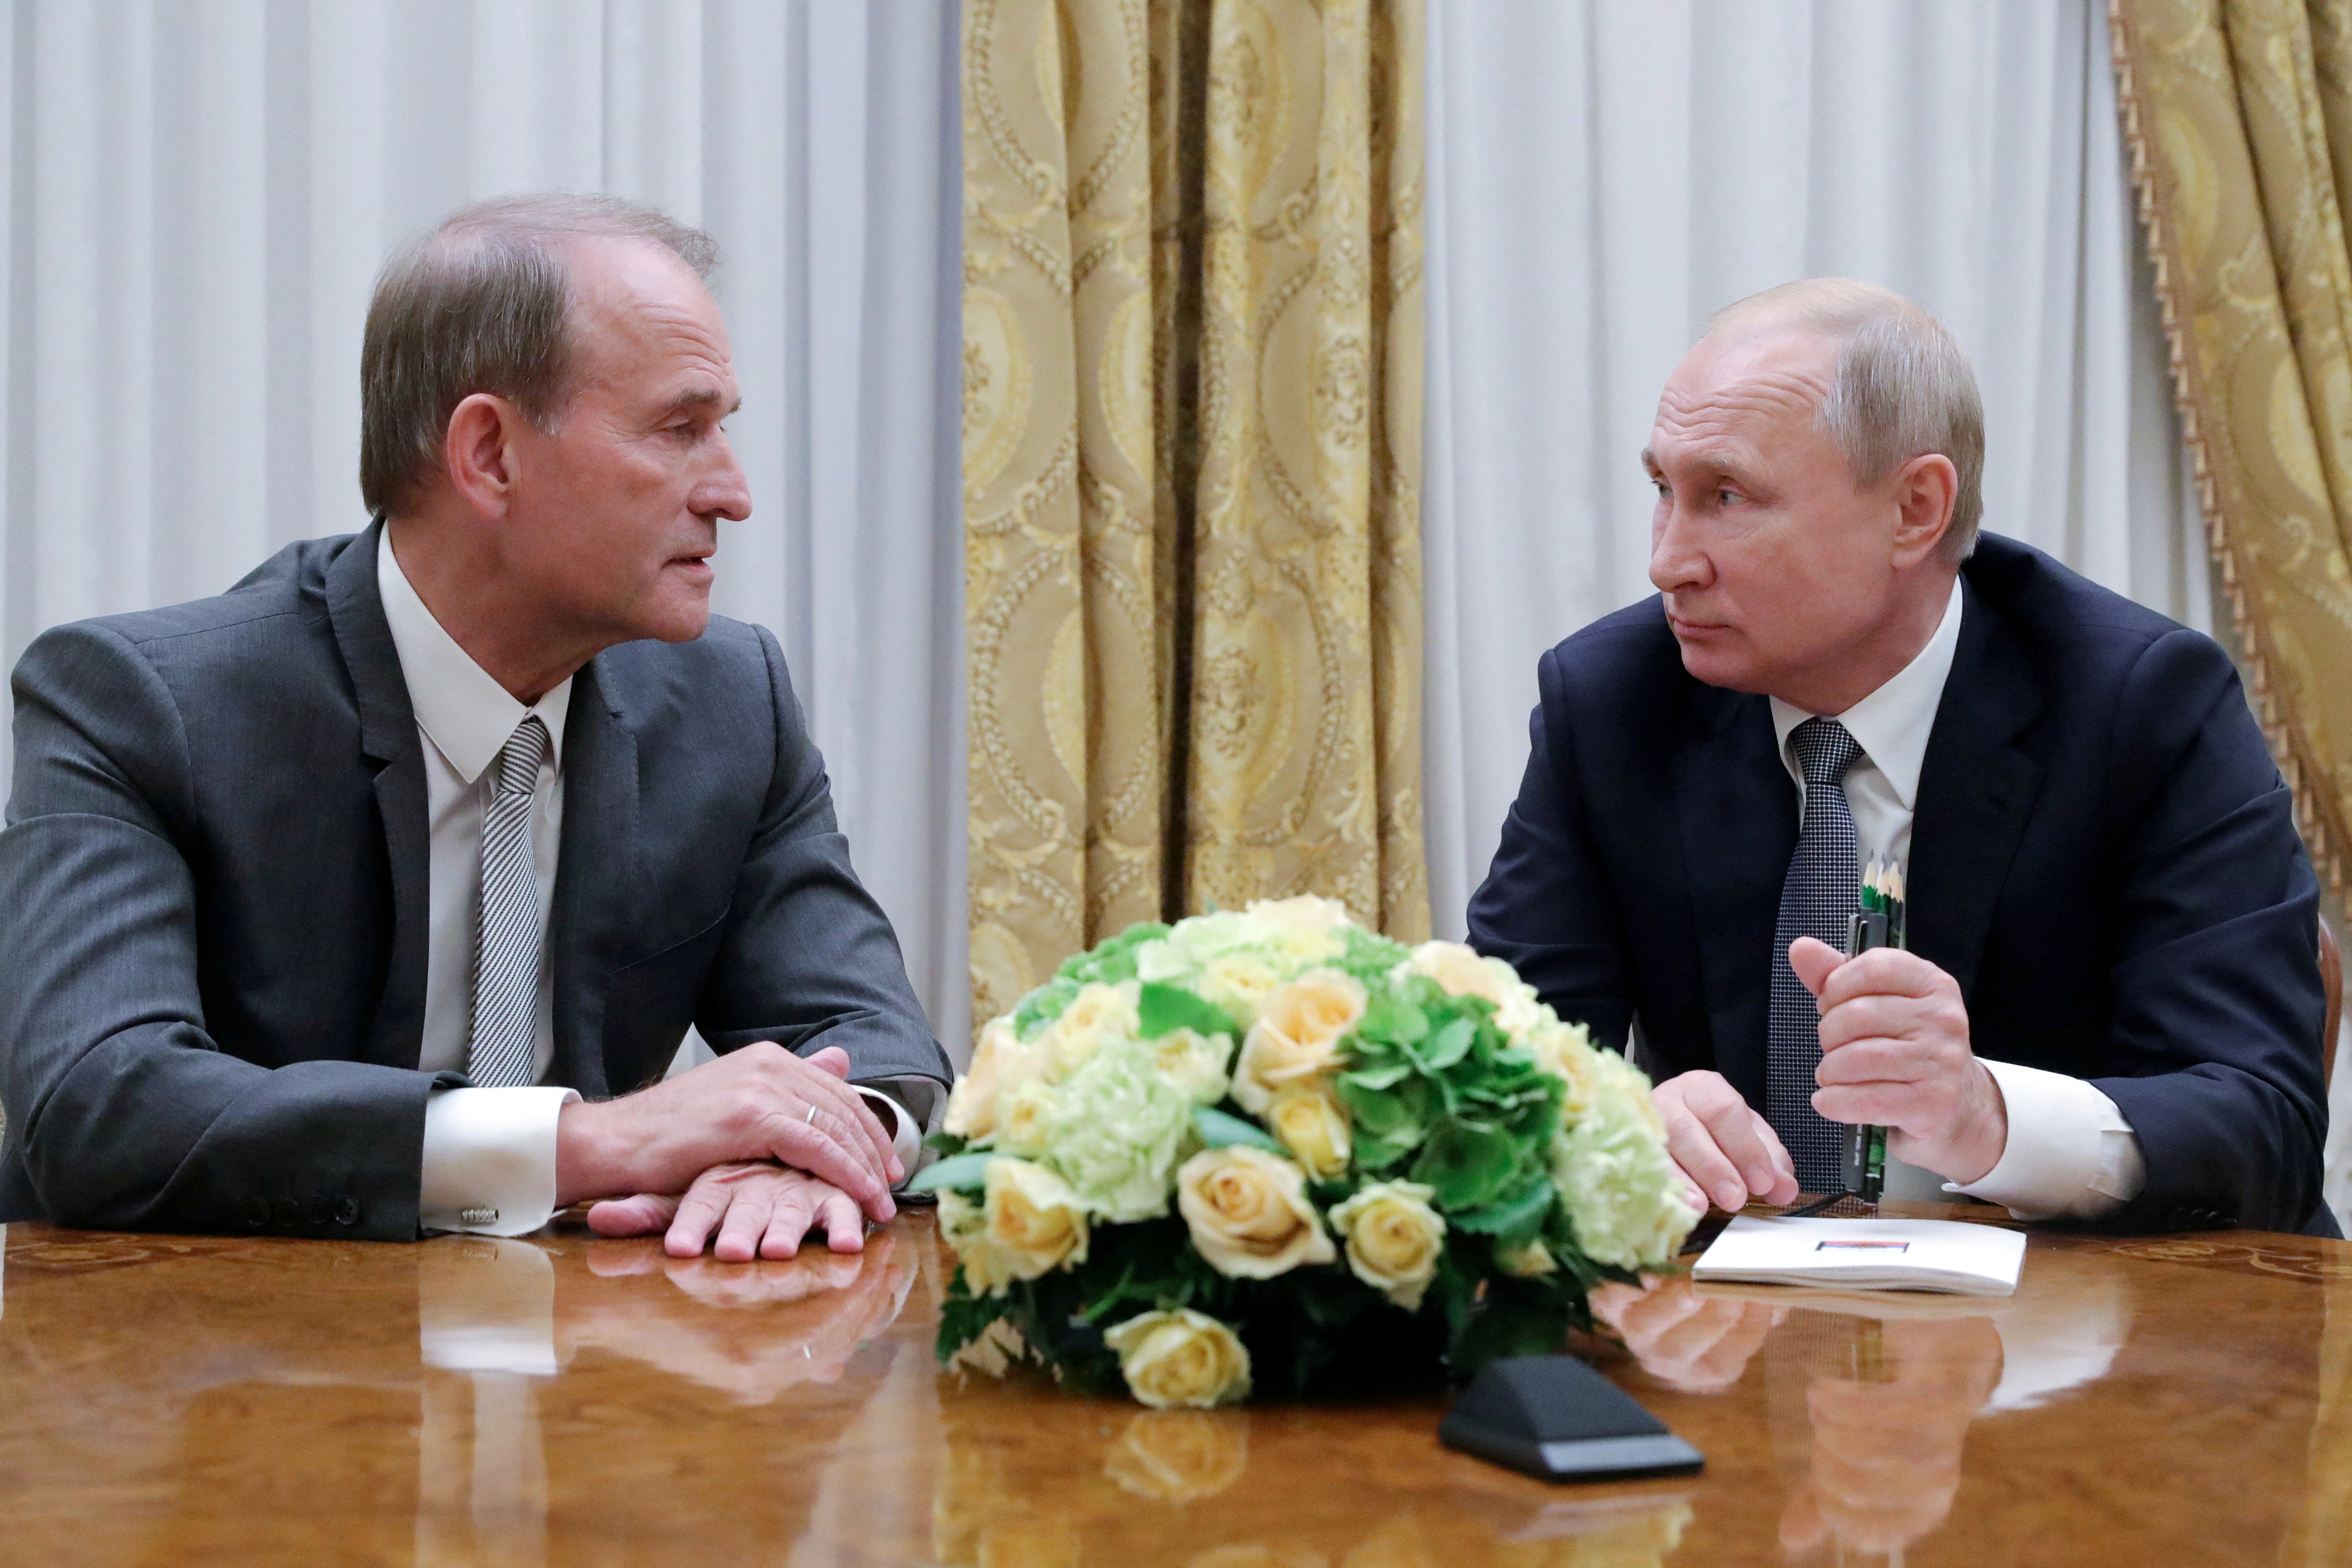 El presidente de Rusia, Vladimir Putin (derecha), asiste a una reunión con lMedvedchuk en San Petersburgo, Rusia, el 18 de julio de 2019